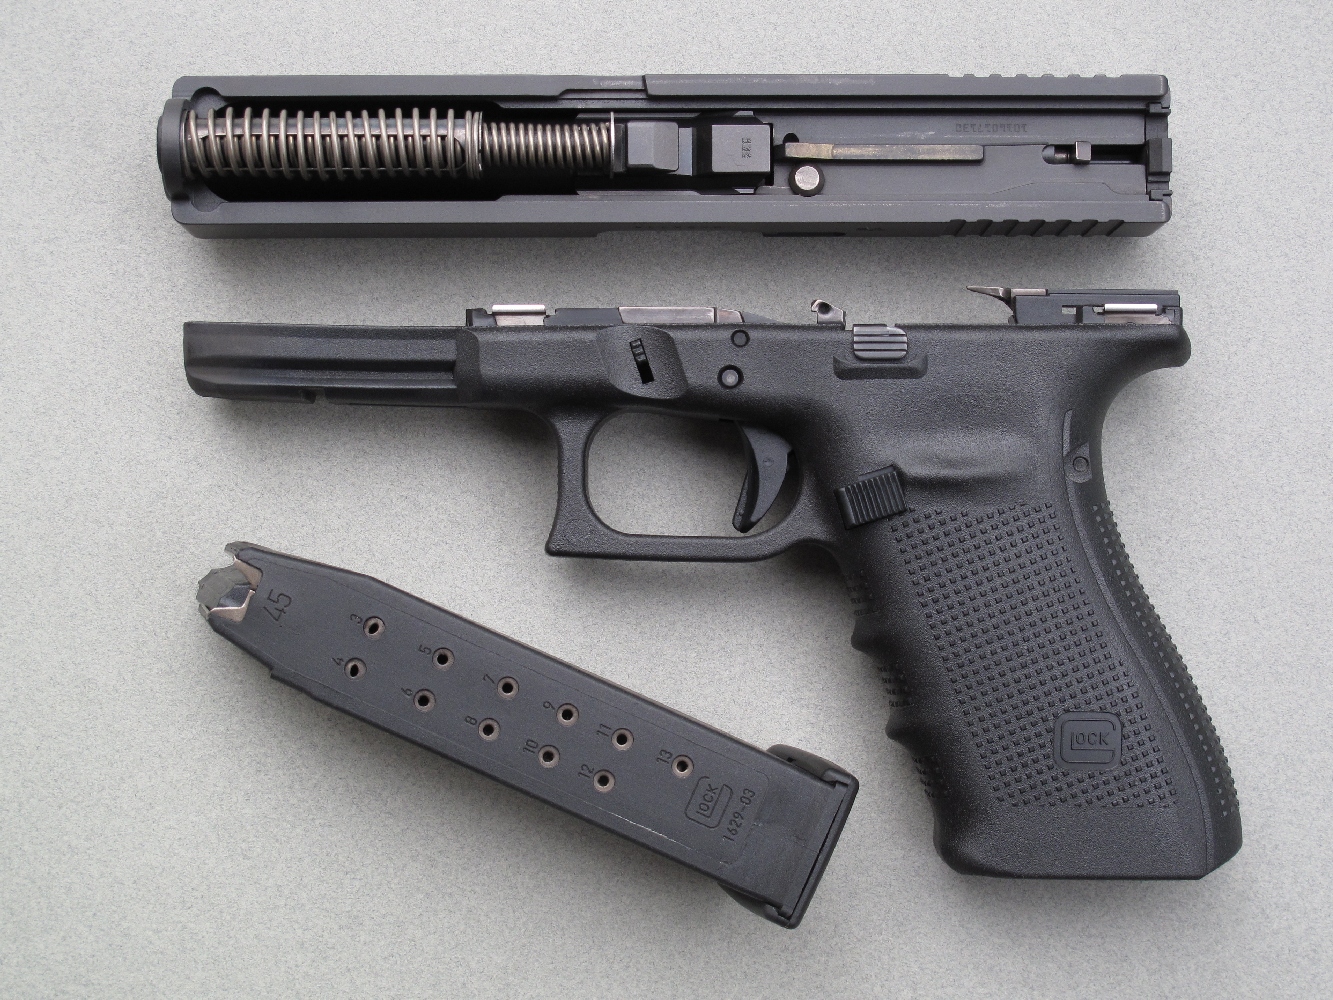 Comme sur tous les pistolets Glock, le démontage de la glissière s’effectue de façon instantanée et sans outil.